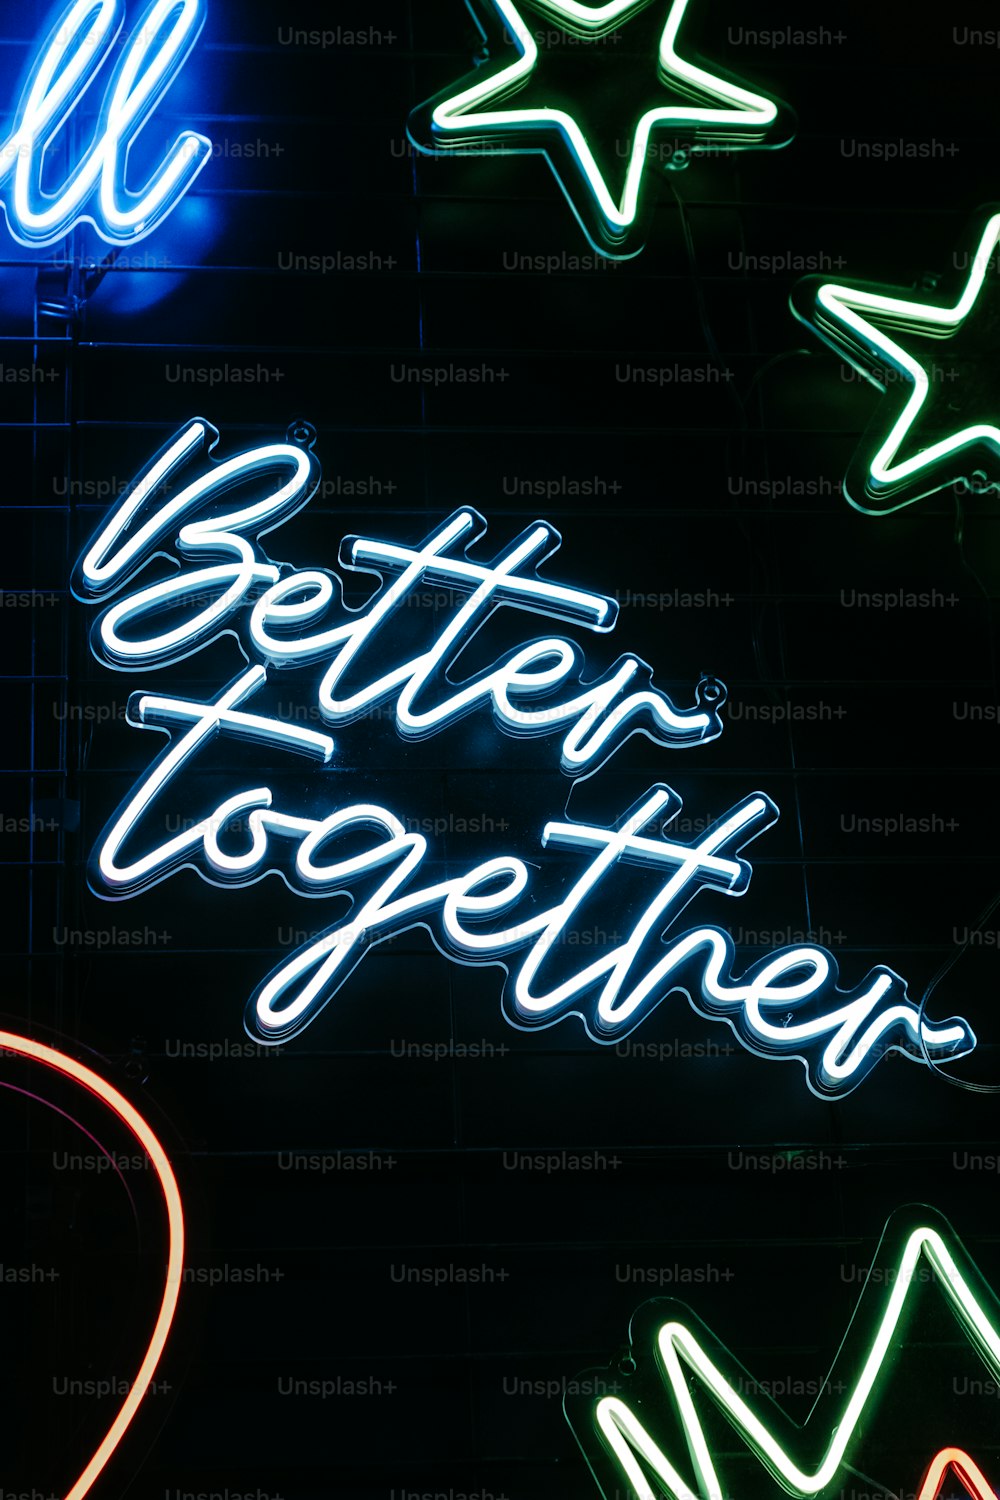 Eine Leuchtreklame, die "Better Together" sagt